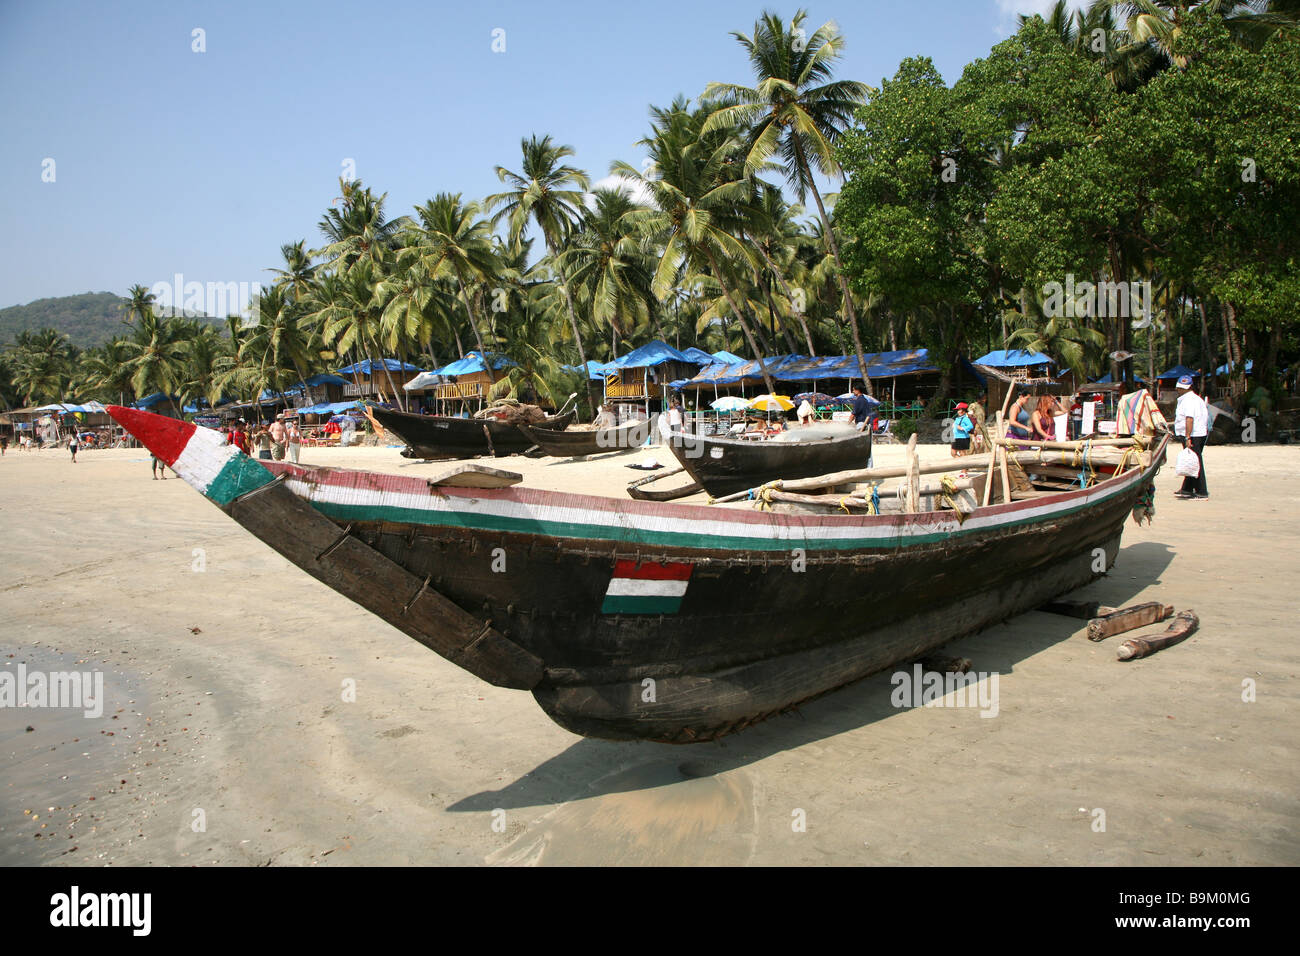 Una tradizionale barca da pesca sulla spiaggia di Mobor in Mobor, Goa, India. Foto Stock